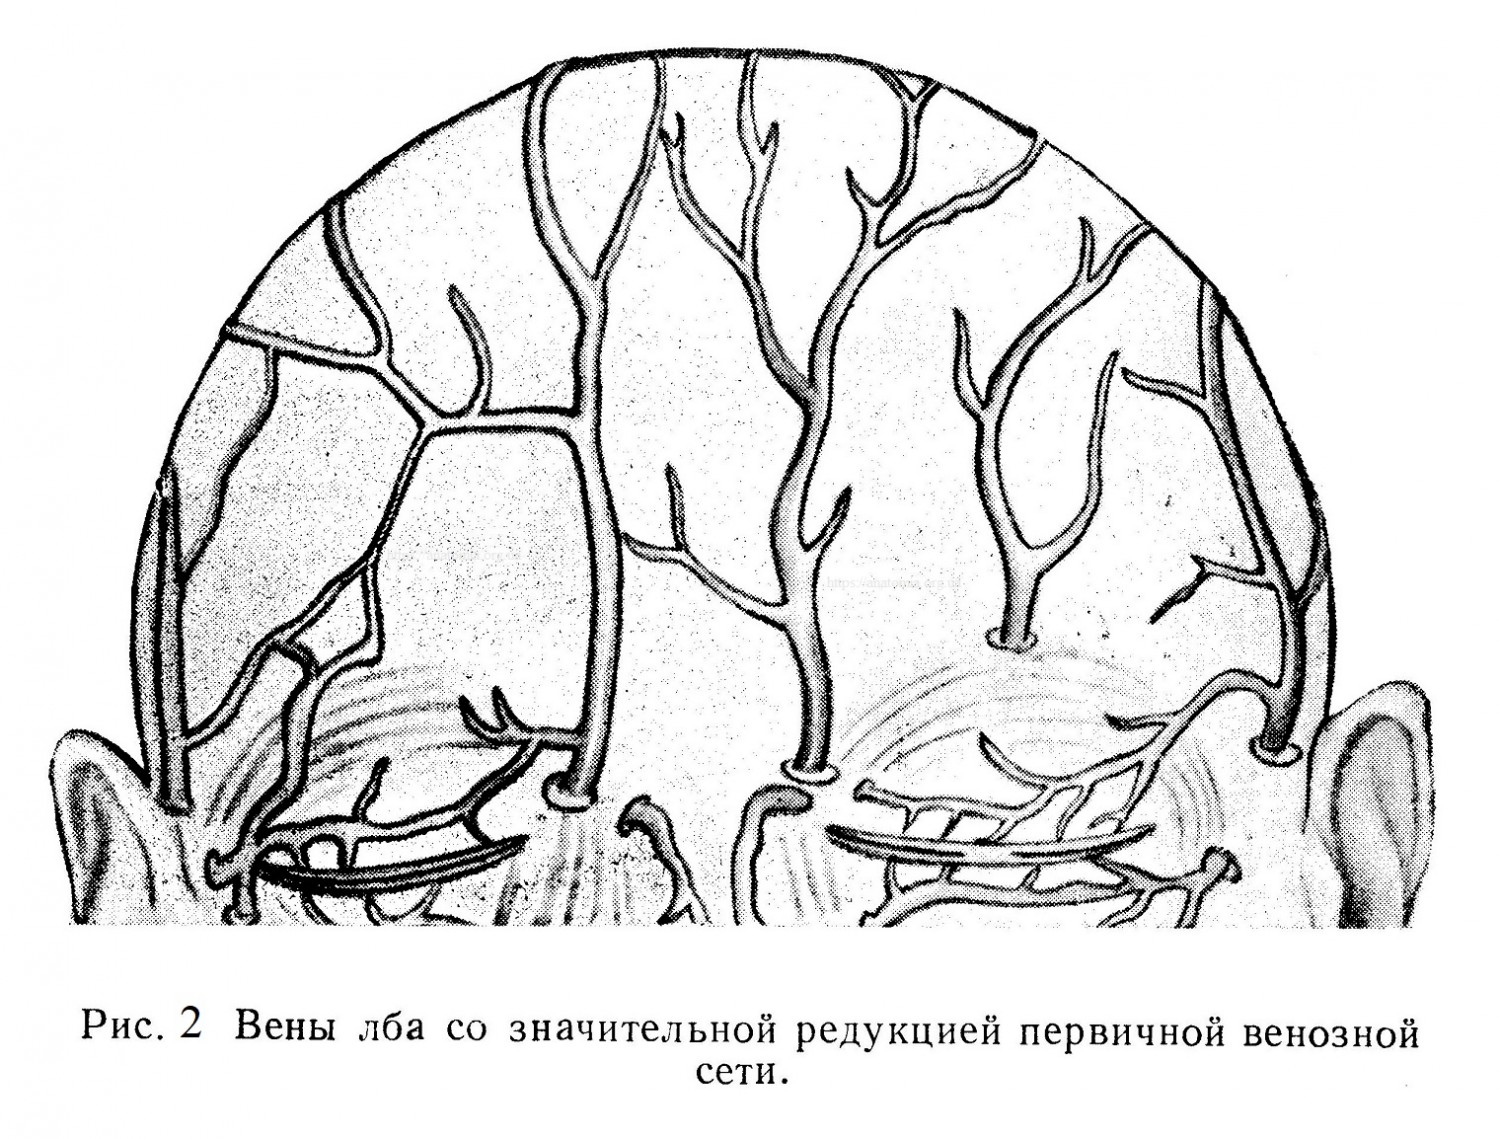 Вены лба со значительной редукцией первичной венозной сети